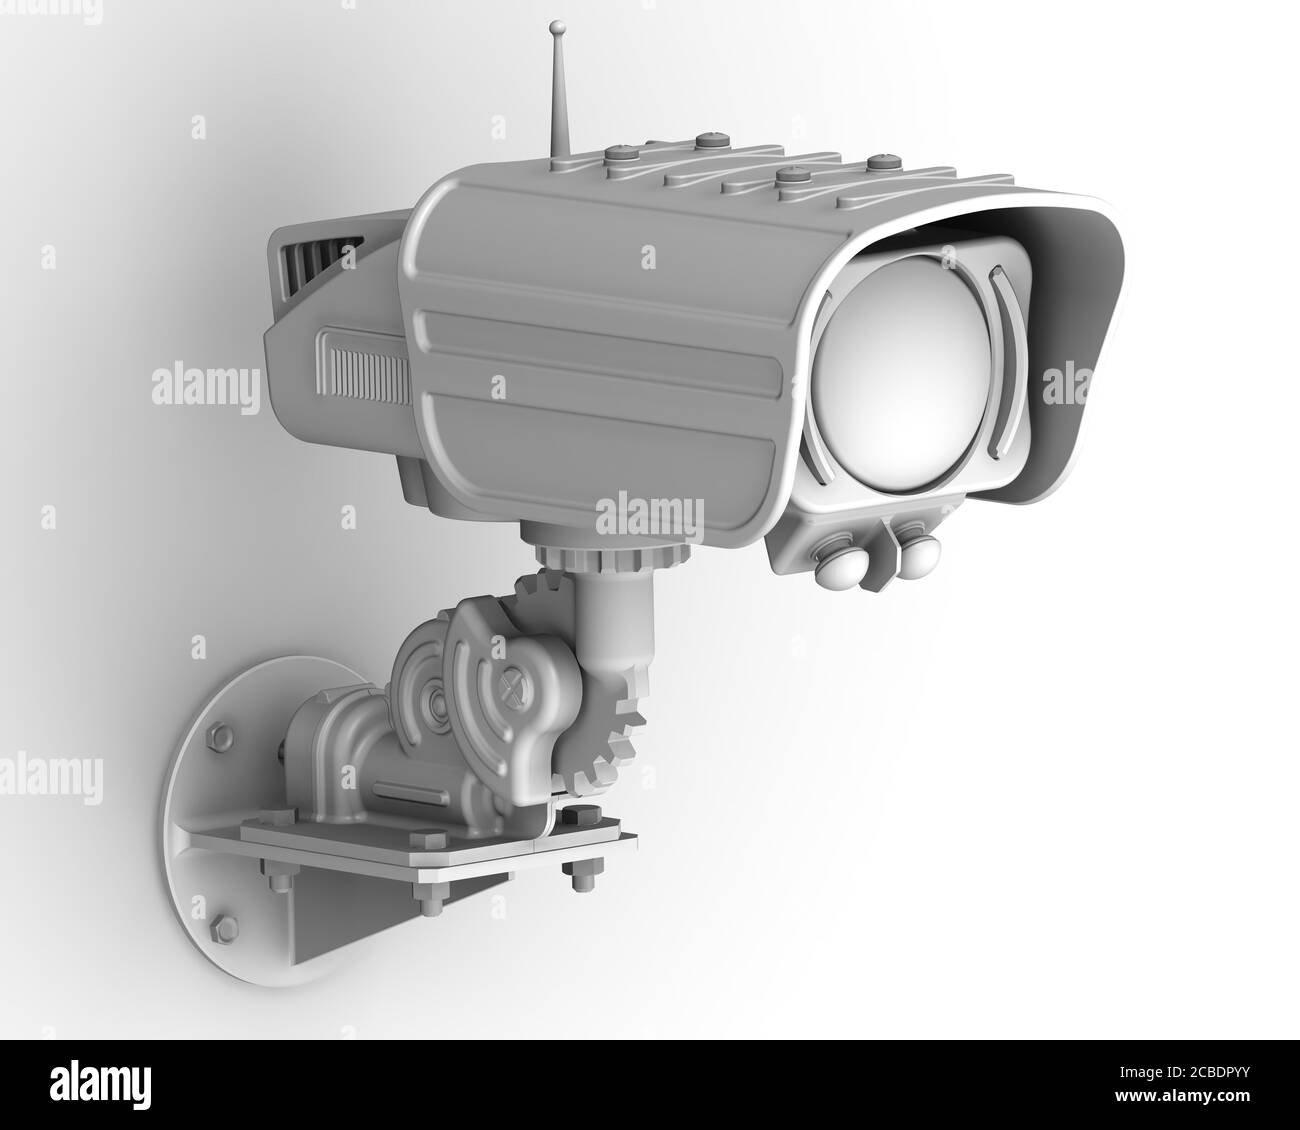 Une caméra de vidéosurveillance au mur. Caméra de sécurité moderne (CCTV). Illustration 3D. Isolé Banque D'Images